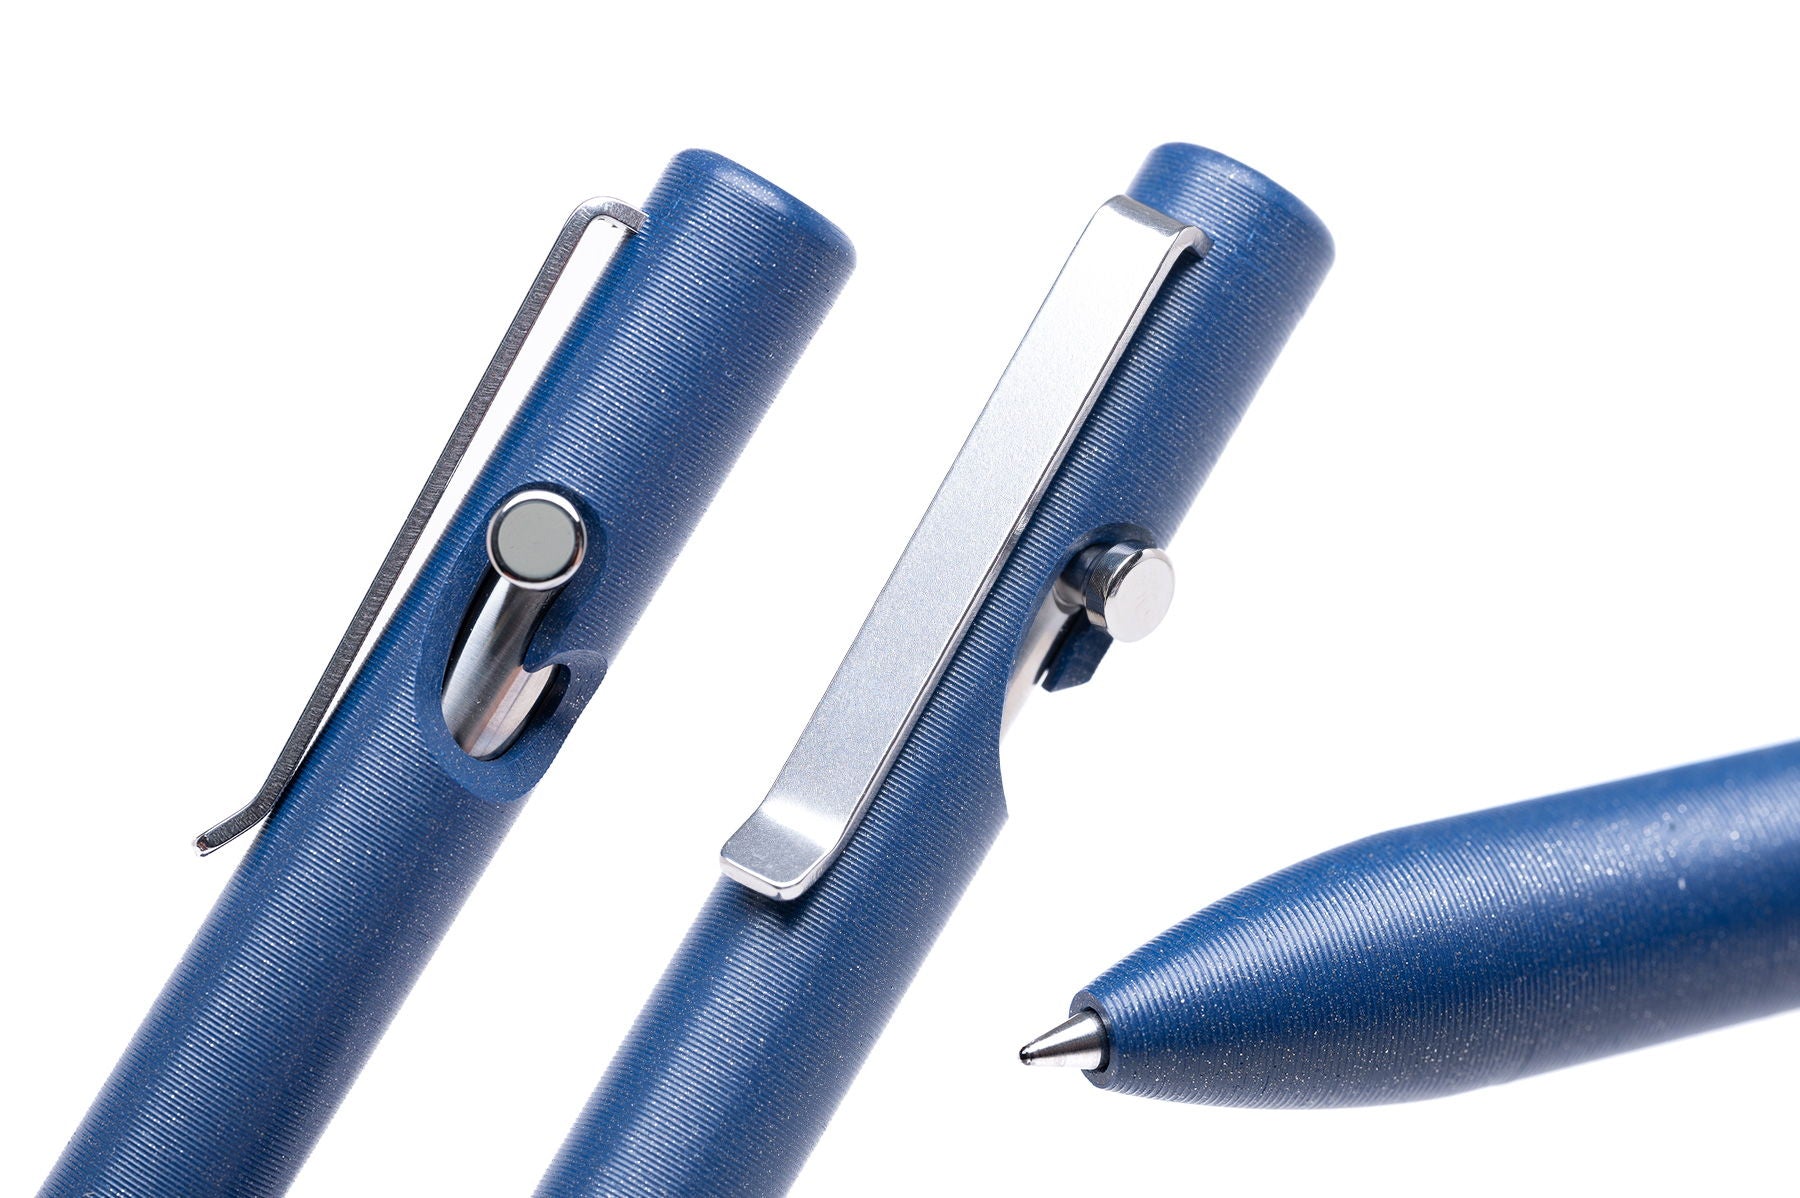 Taktile Drehung – Tecaform Bolt Action Pen